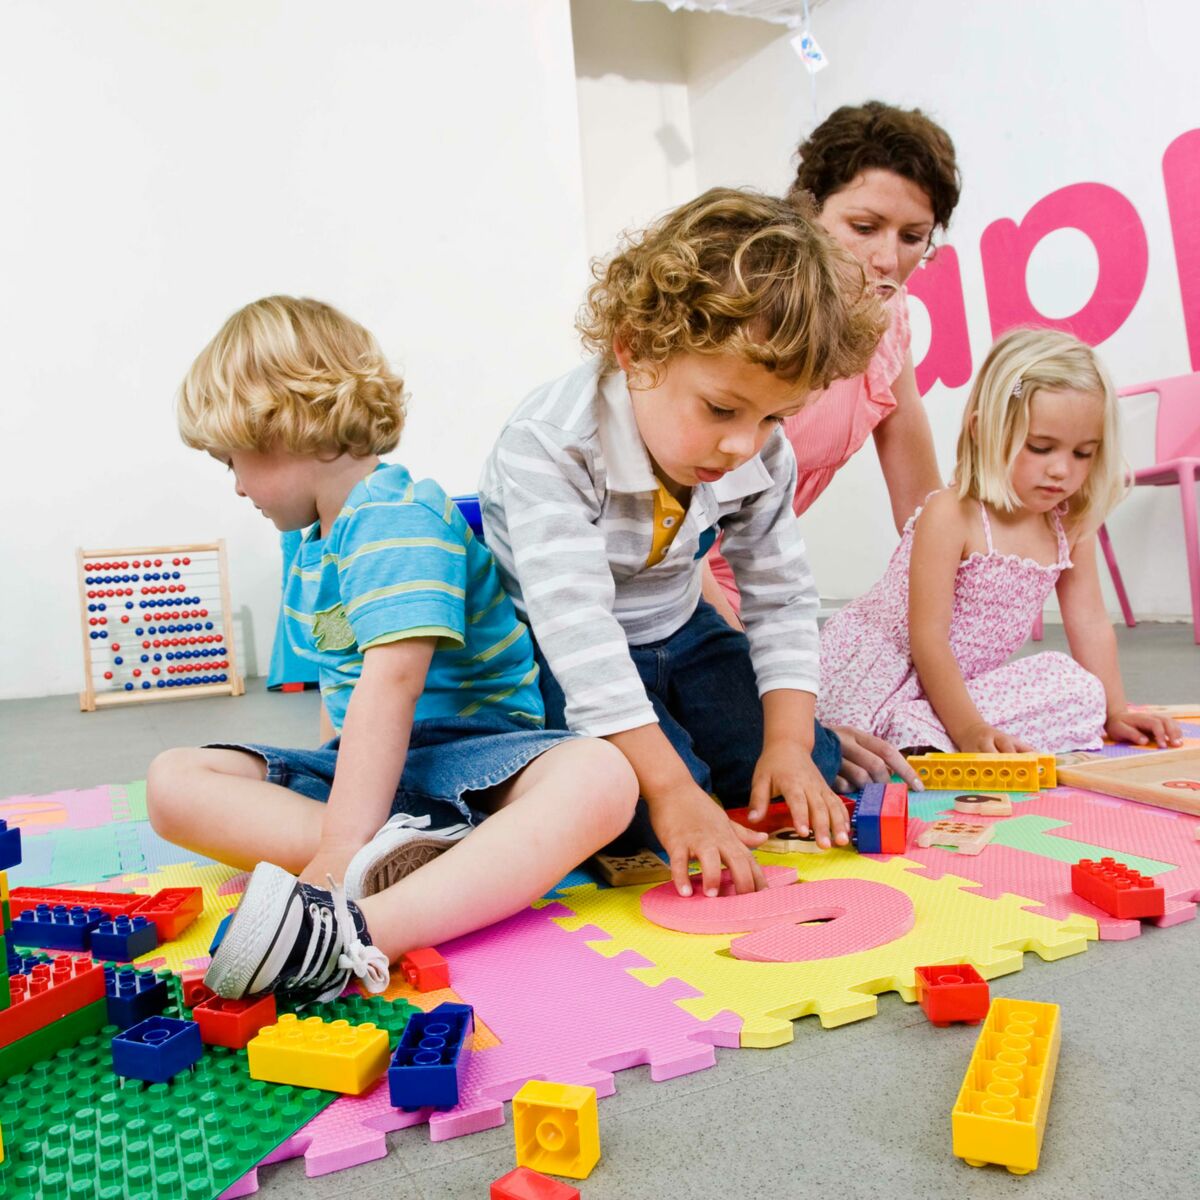 Les jouets peuvent affecter la créativité des enfants : Femme Actuelle Le  MAG